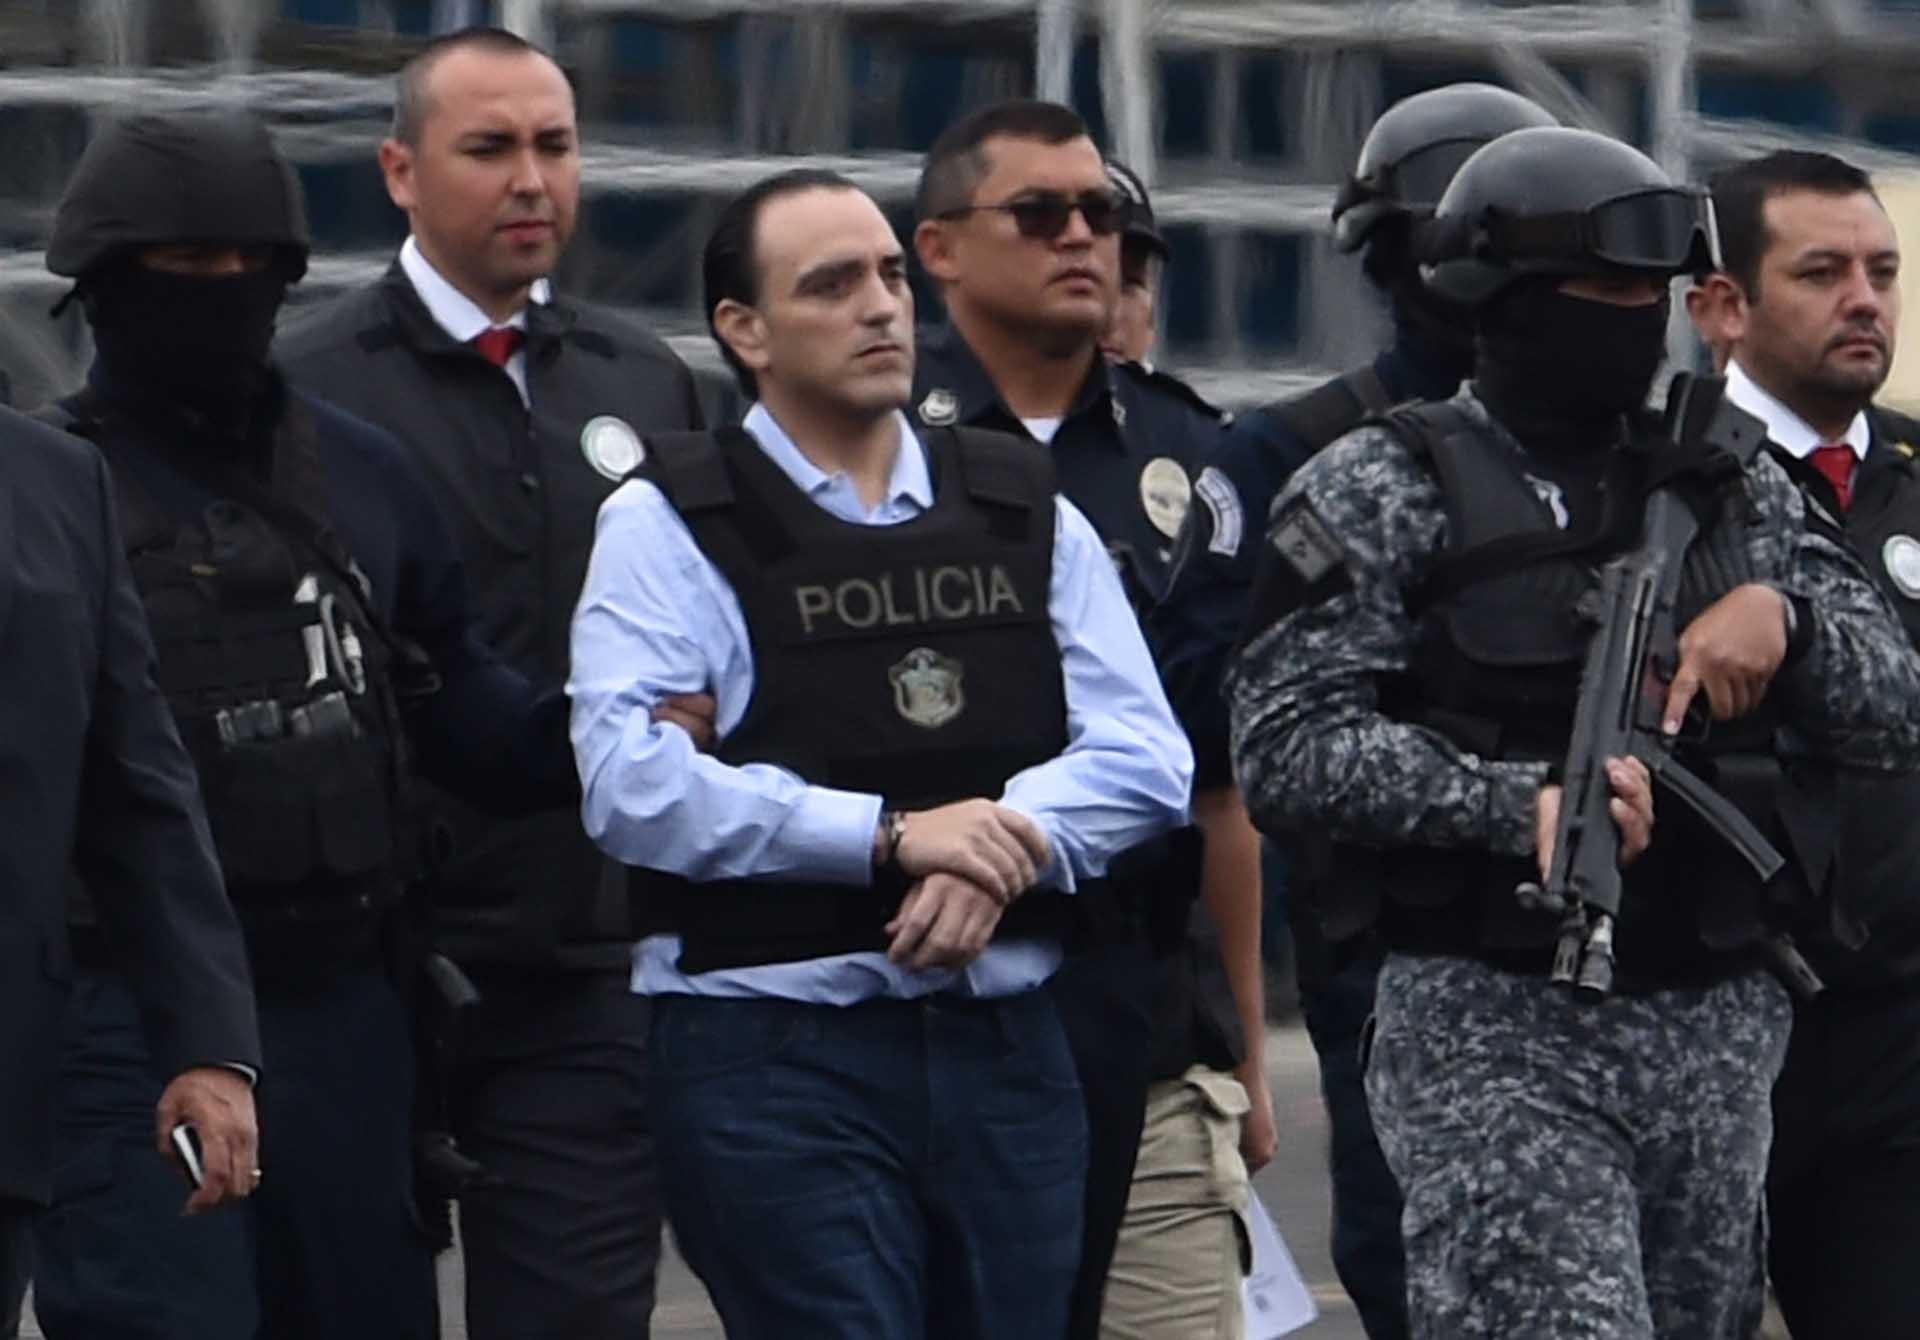 El exgobernador de Quintana Roo fue acusado de lavado de dinero, peculado, aprovechamiento ilícito y ejercicio indebido de la administración pública (Foto: AFP PHOTO / Rodrigo ARANGUA)